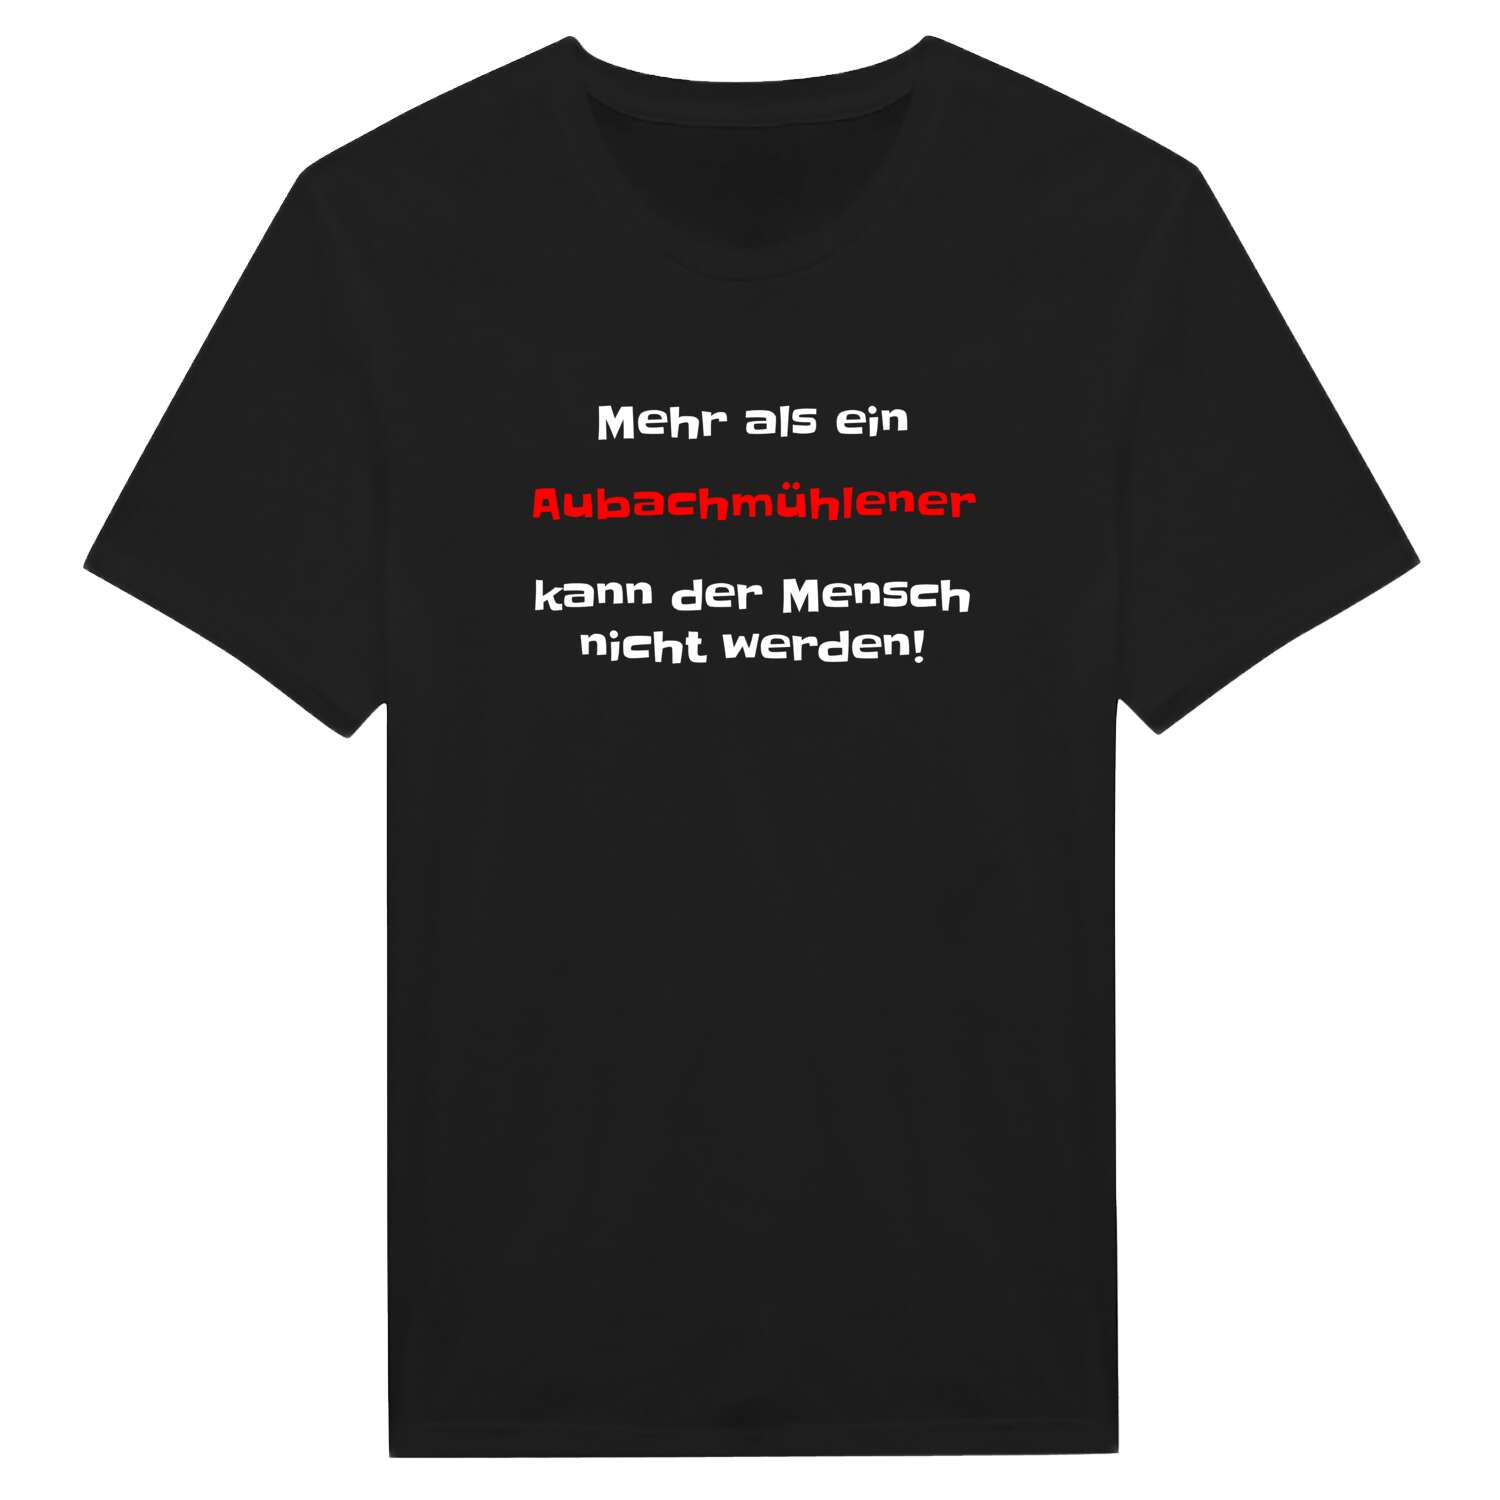 Aubachmühle T-Shirt »Mehr als ein«